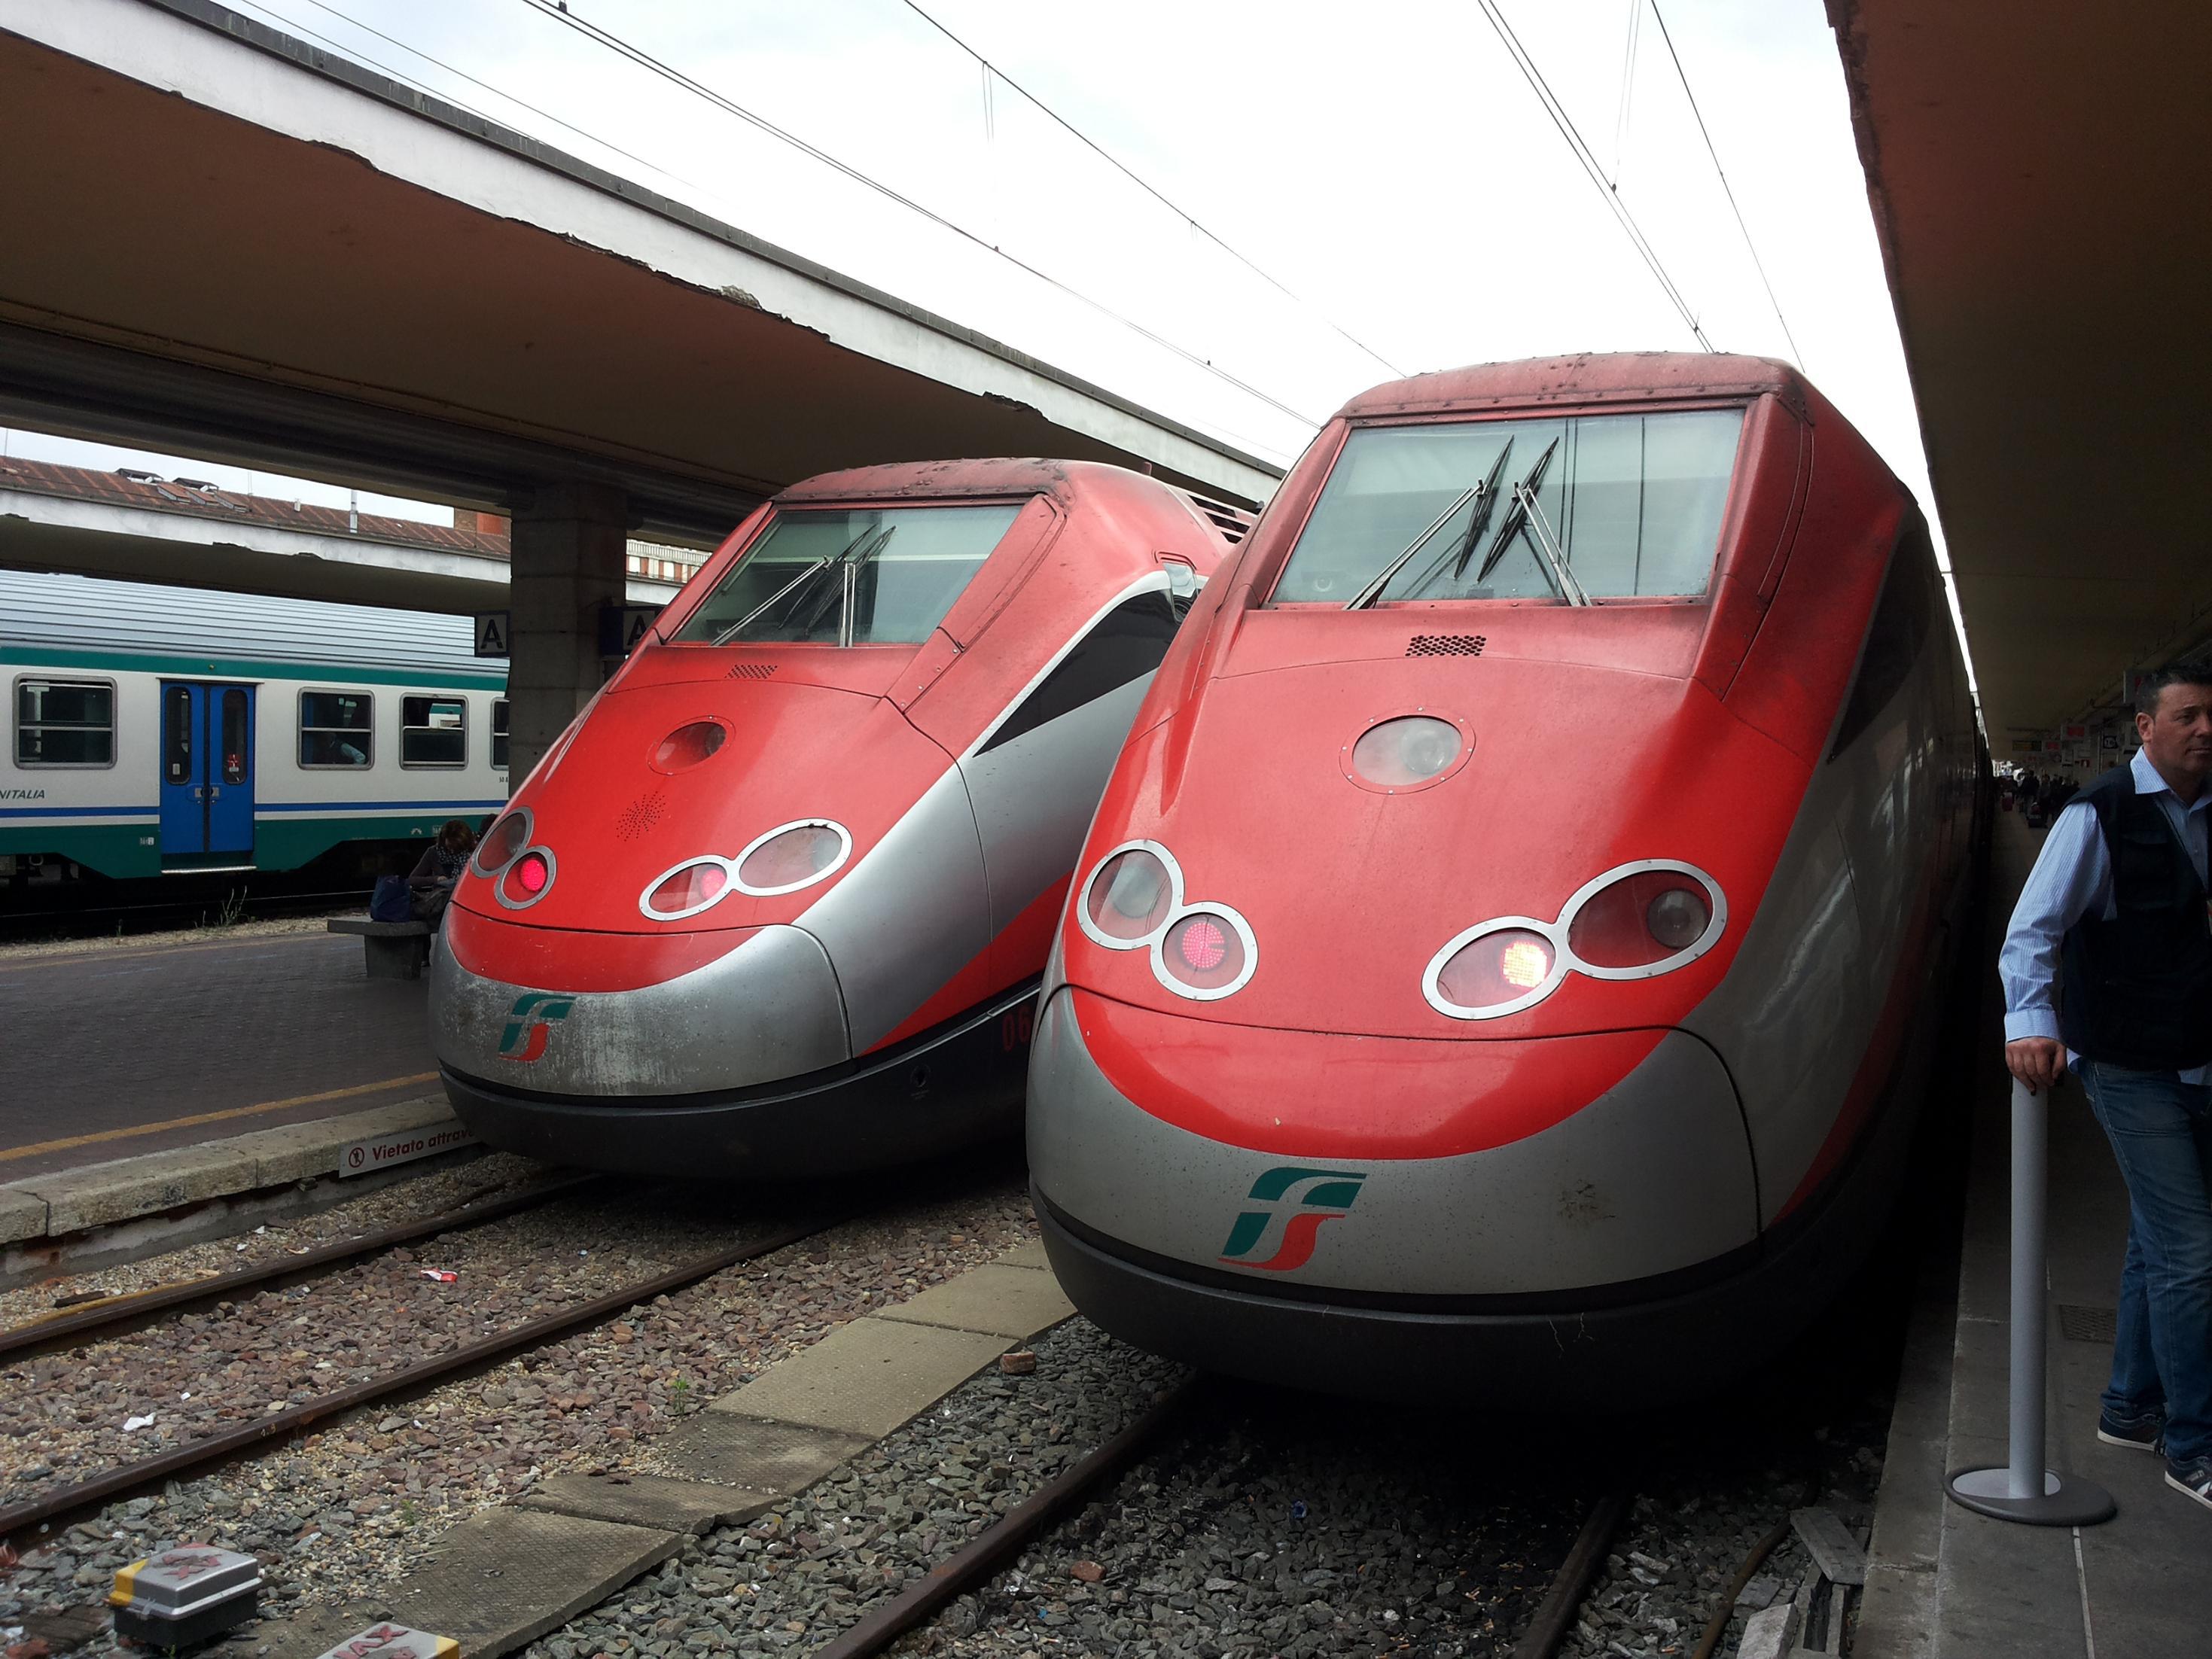 Treni, in Piemonte arrivano le telecamere sui convogli e i tornelli nelle stazioni